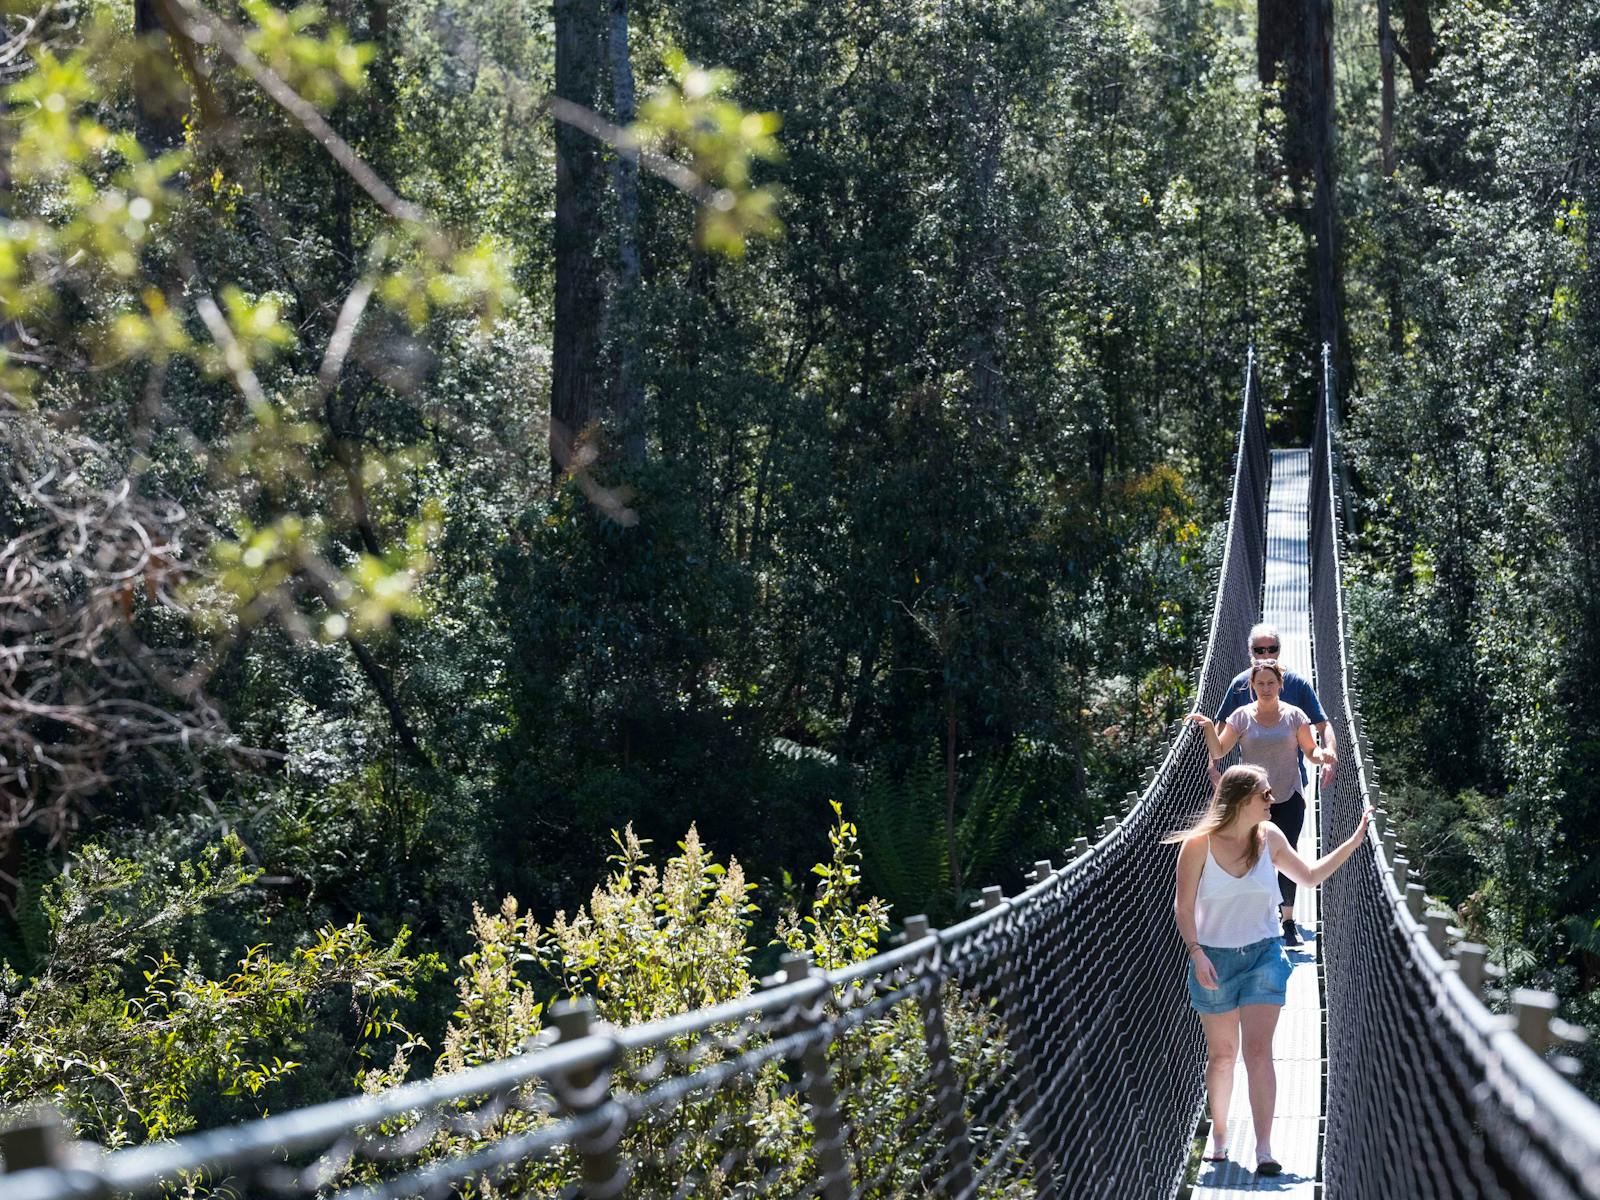 Swinging Bridges walk over the Picton River located at Tahune Adventures Tasmania